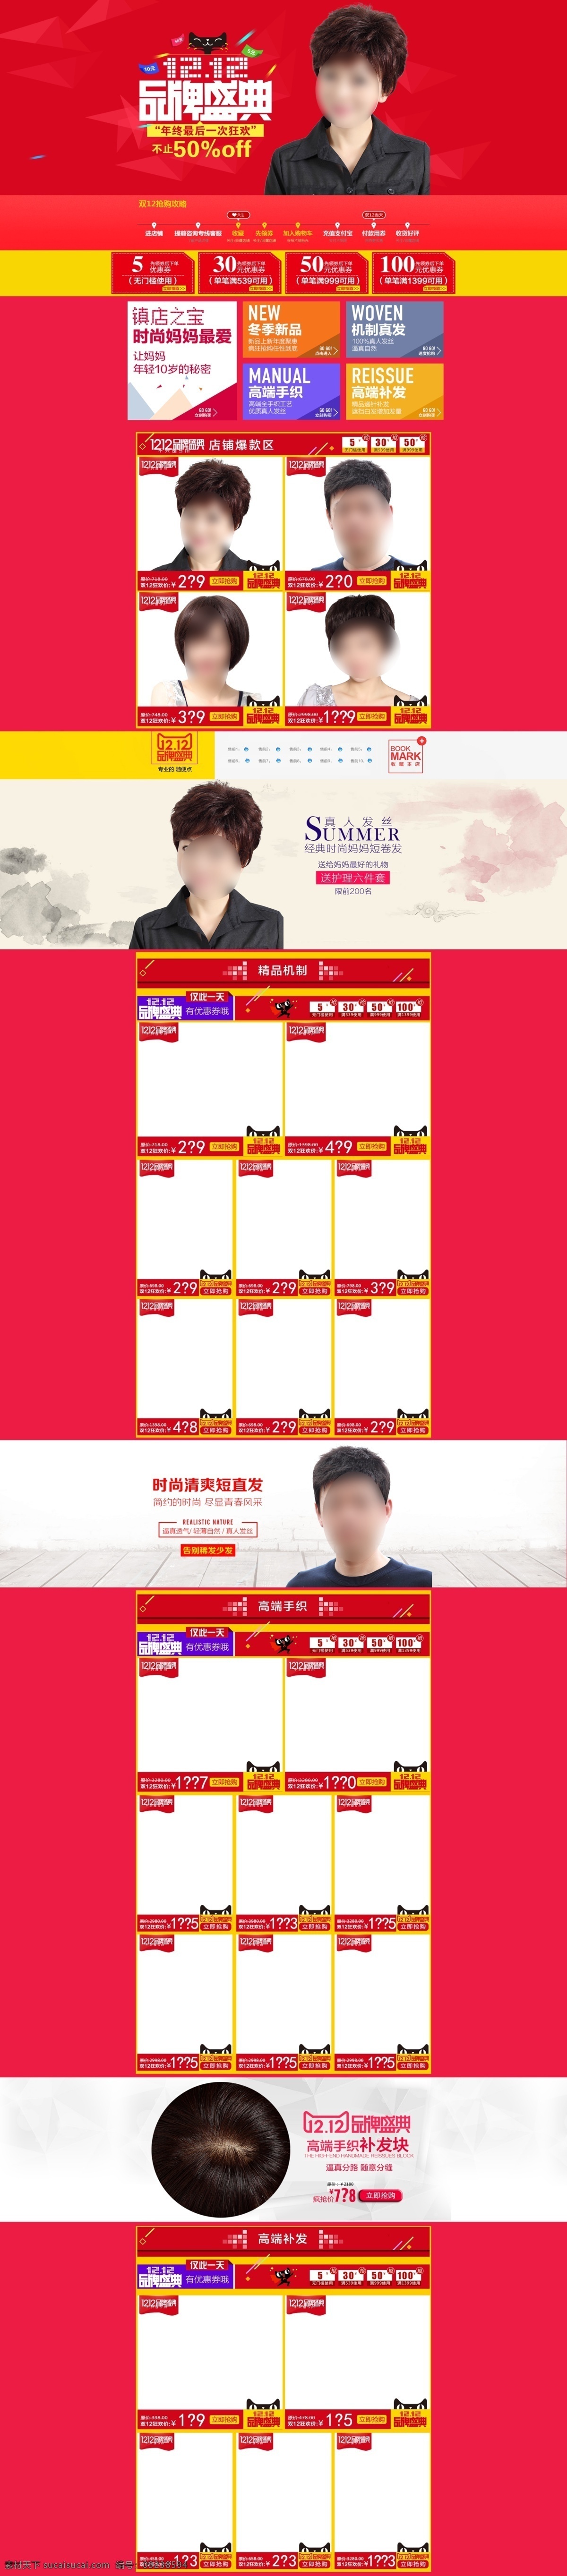 天猫 淘宝 拍拍 京东 双 活动 促销 页面 模板下载 2015 年终 庆典 首页 装修 红色